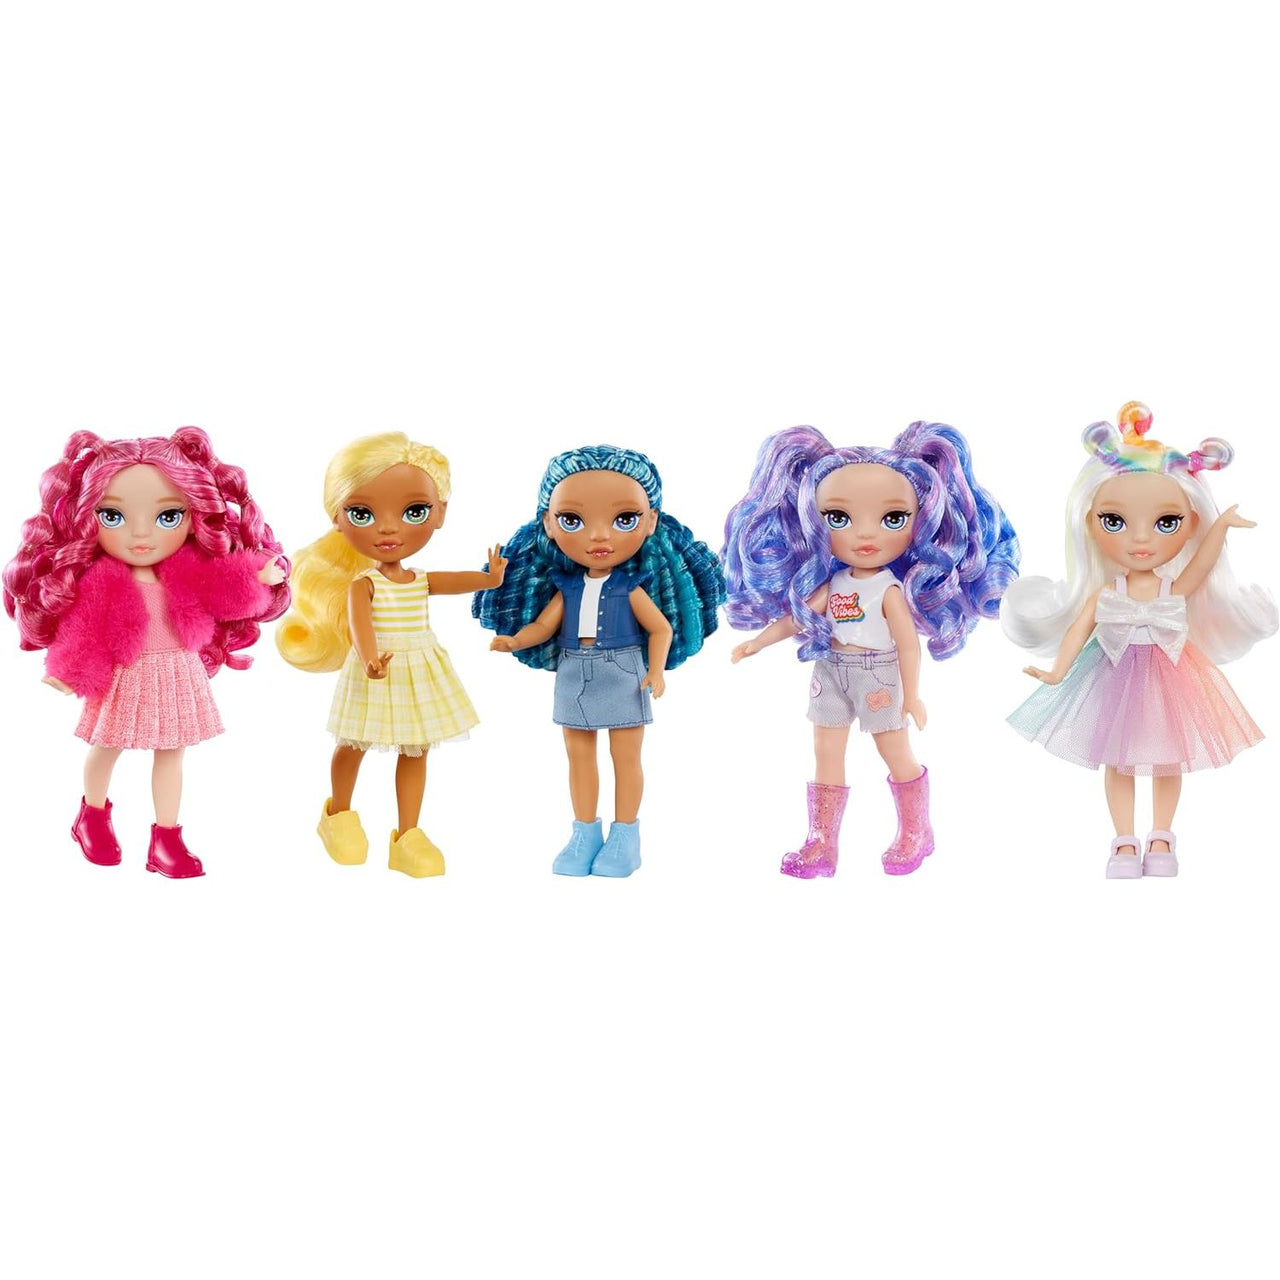 Rainbow High Littles Doll – Opal Raine (Rainbow) Rainbow High